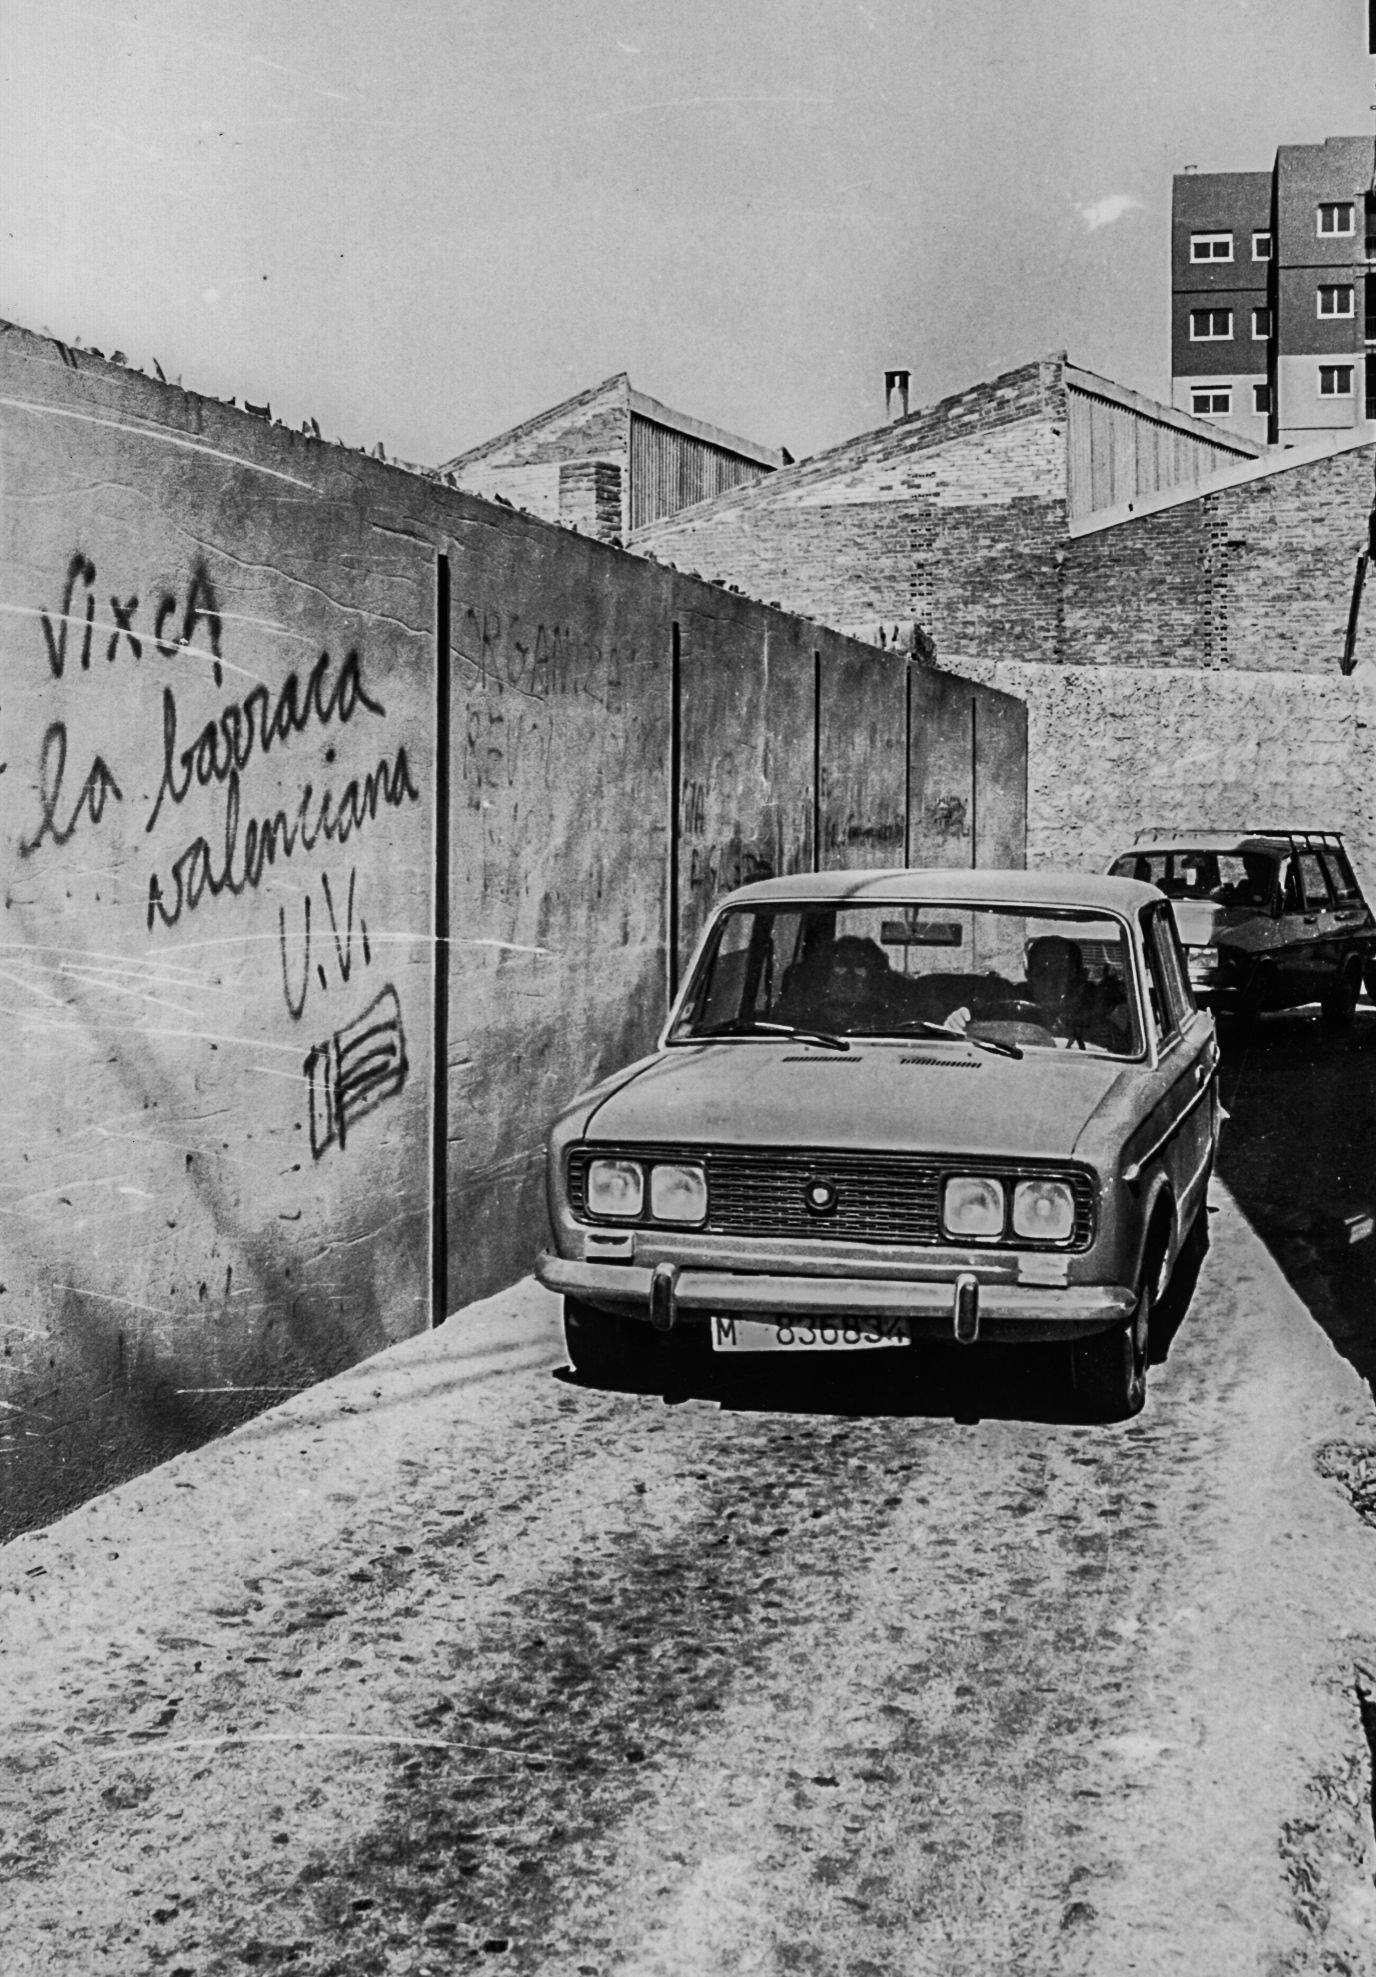 Fotos de la València desaparecida: El Patraix de los 80 y 90